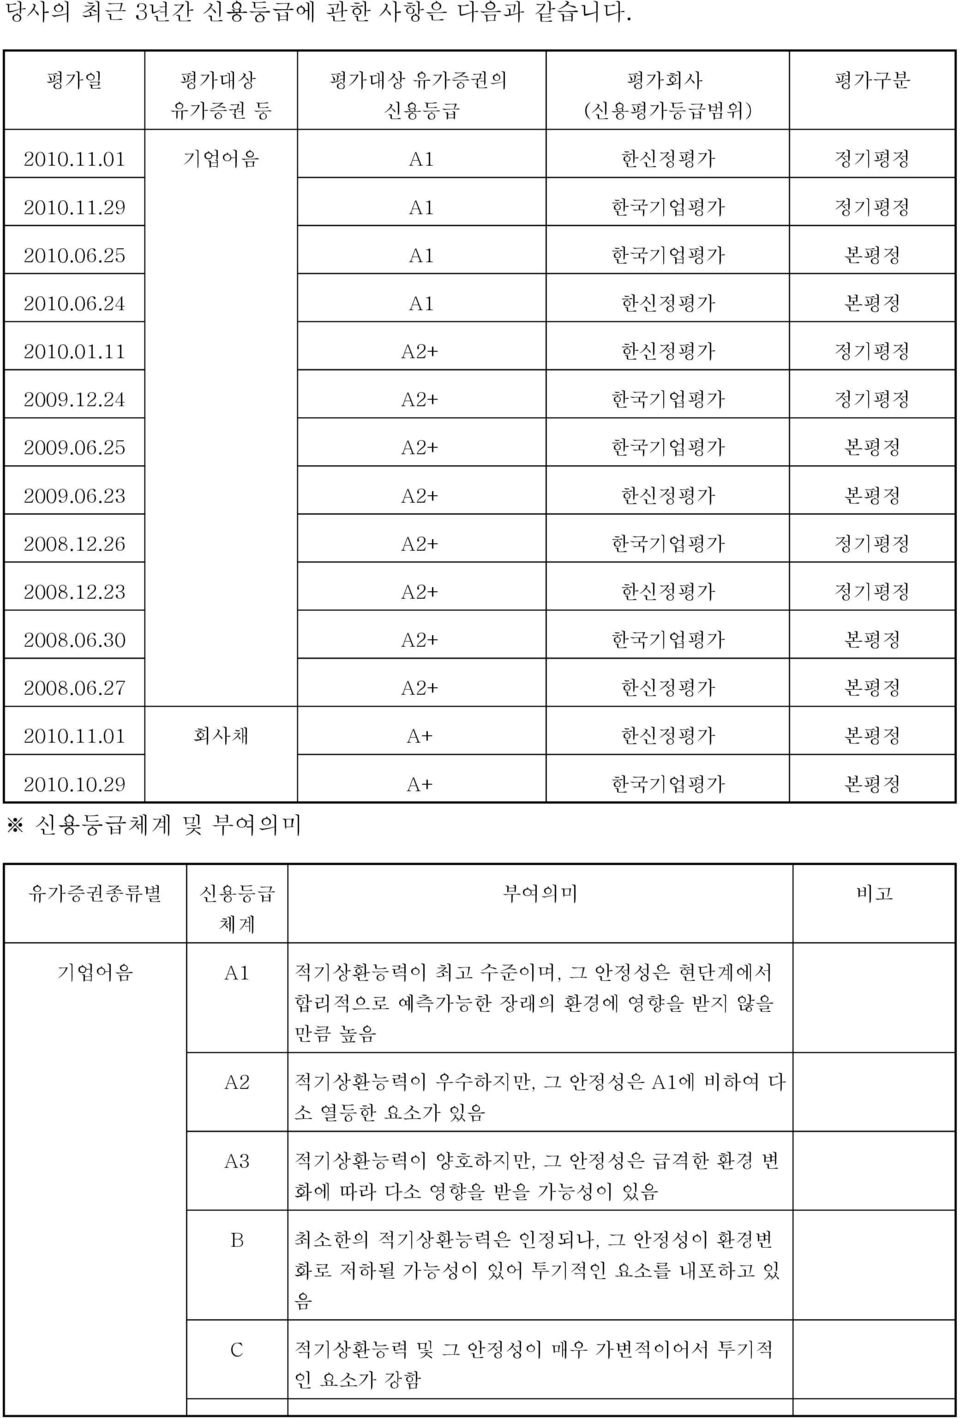 11.01 회사채 A+ 한신정평가 본평정 2010.